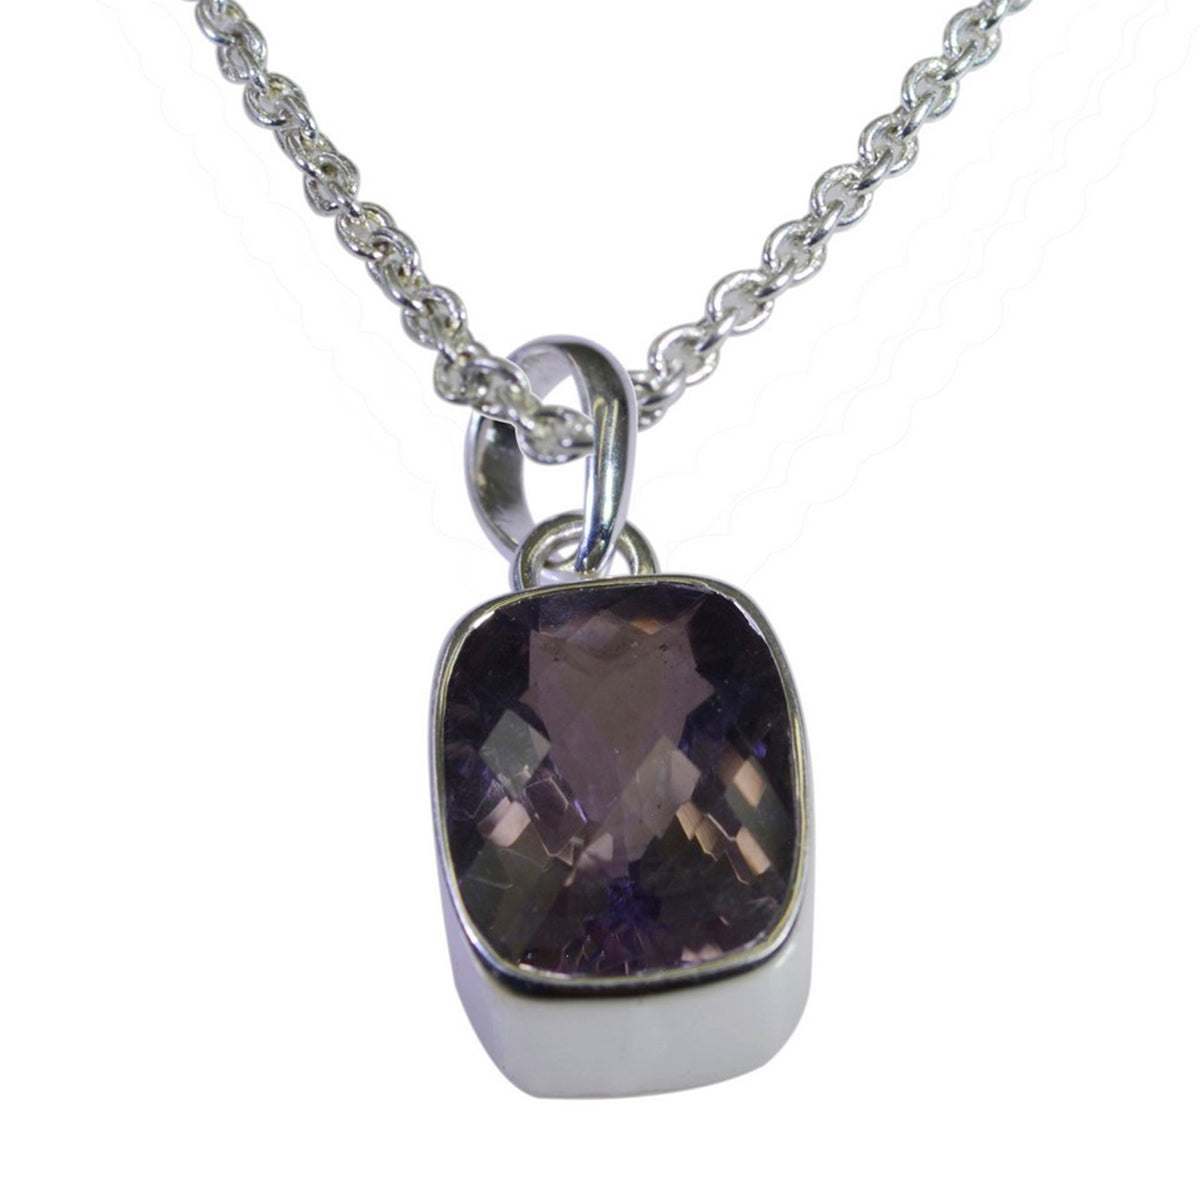 Riyo – pendentif octogonal en argent et améthyste violet, pierres précieuses esthétiques, cadeau pour sœur